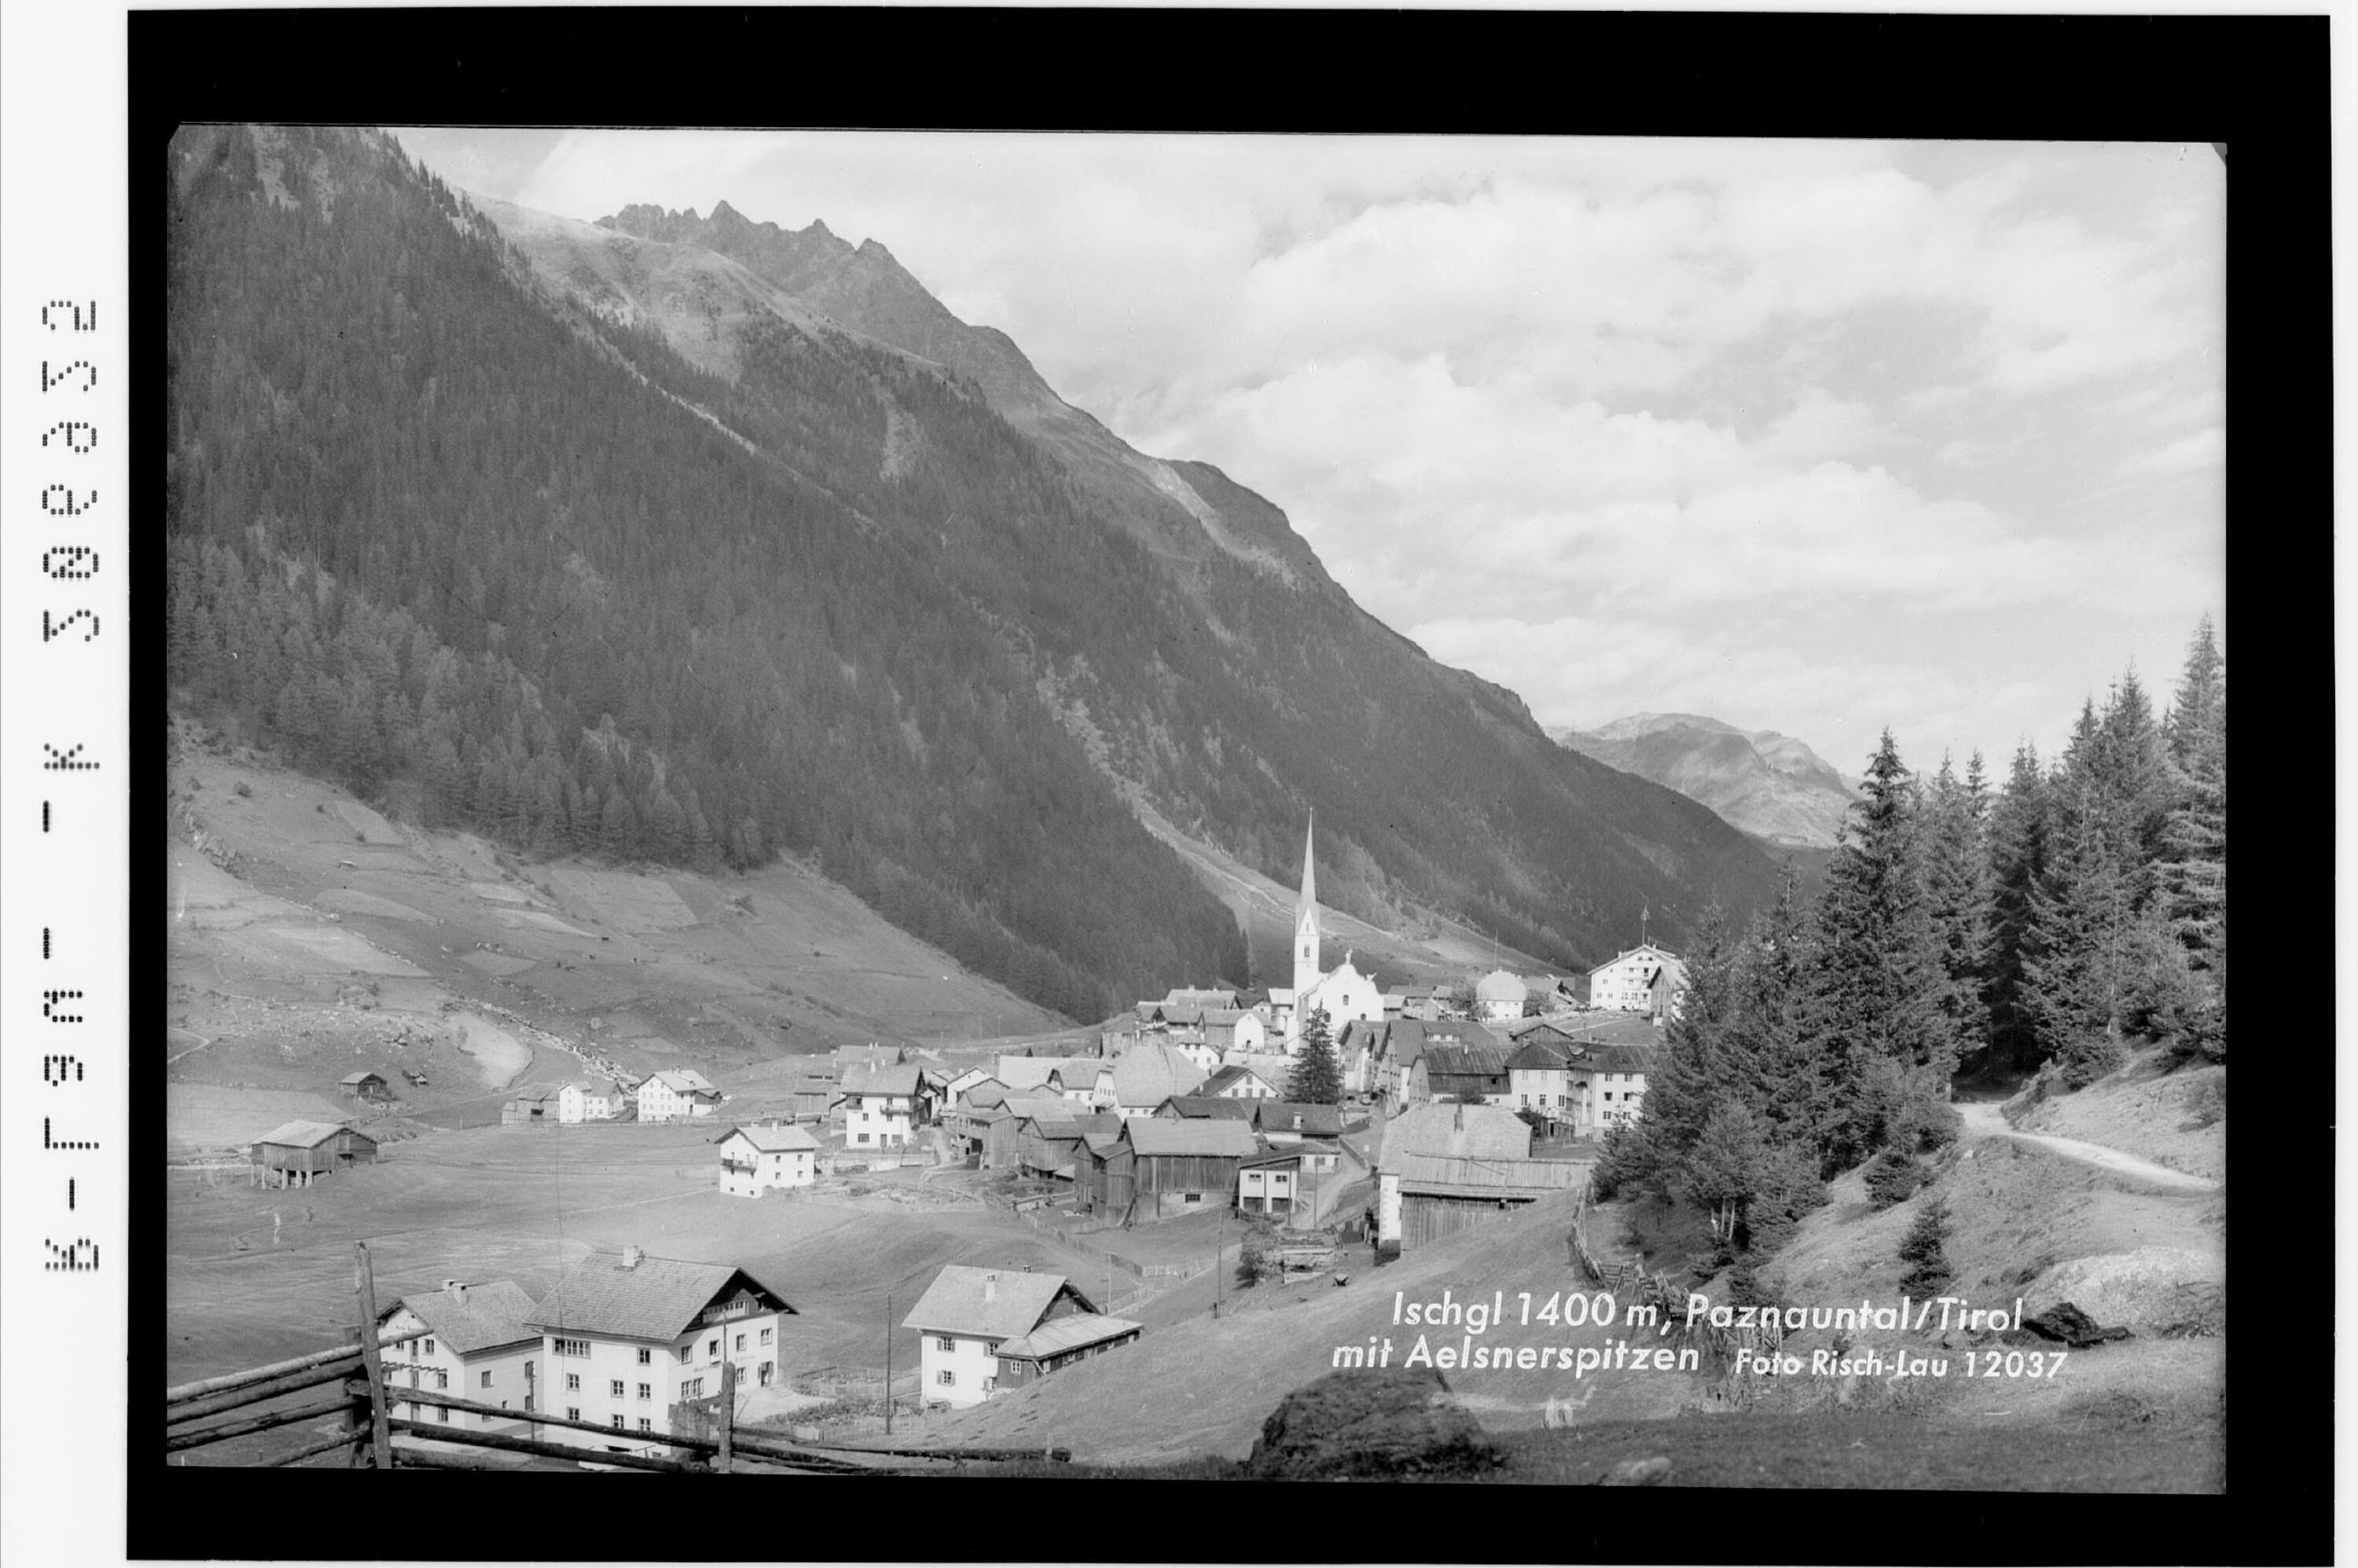 Ischgl 1400 m, Paznauntal / Tirol mit Aelsnerspitzen></div>


    <hr>
    <div class=